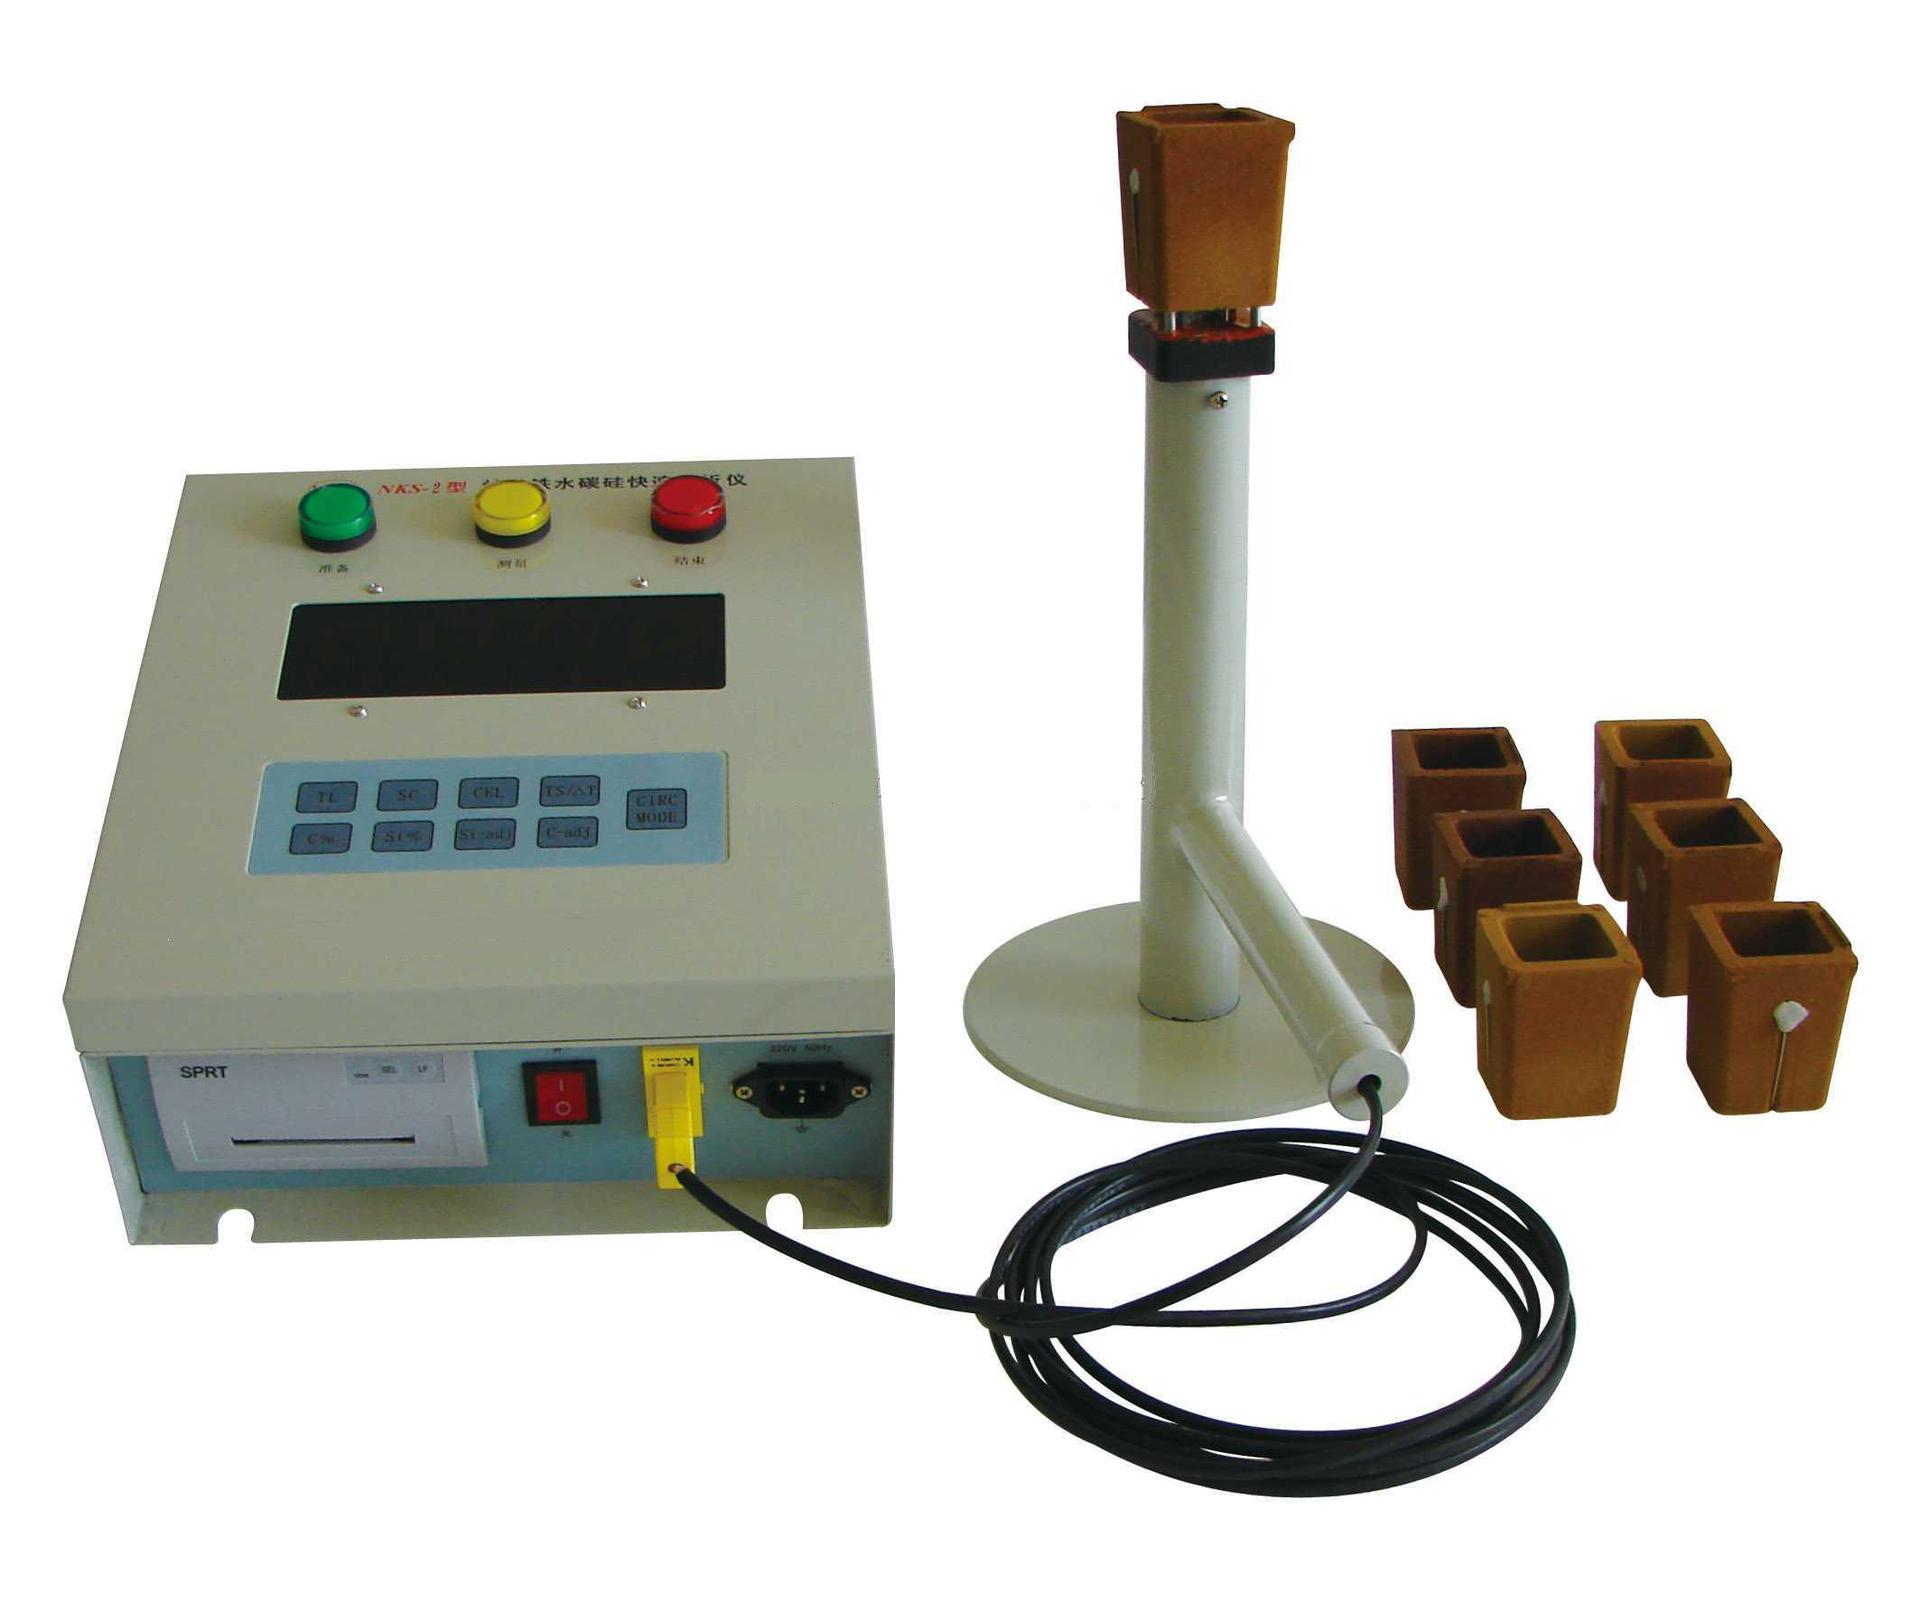 炉前铁水质量管理仪 炉前碳硅分析仪 铁水分析仪示例图1